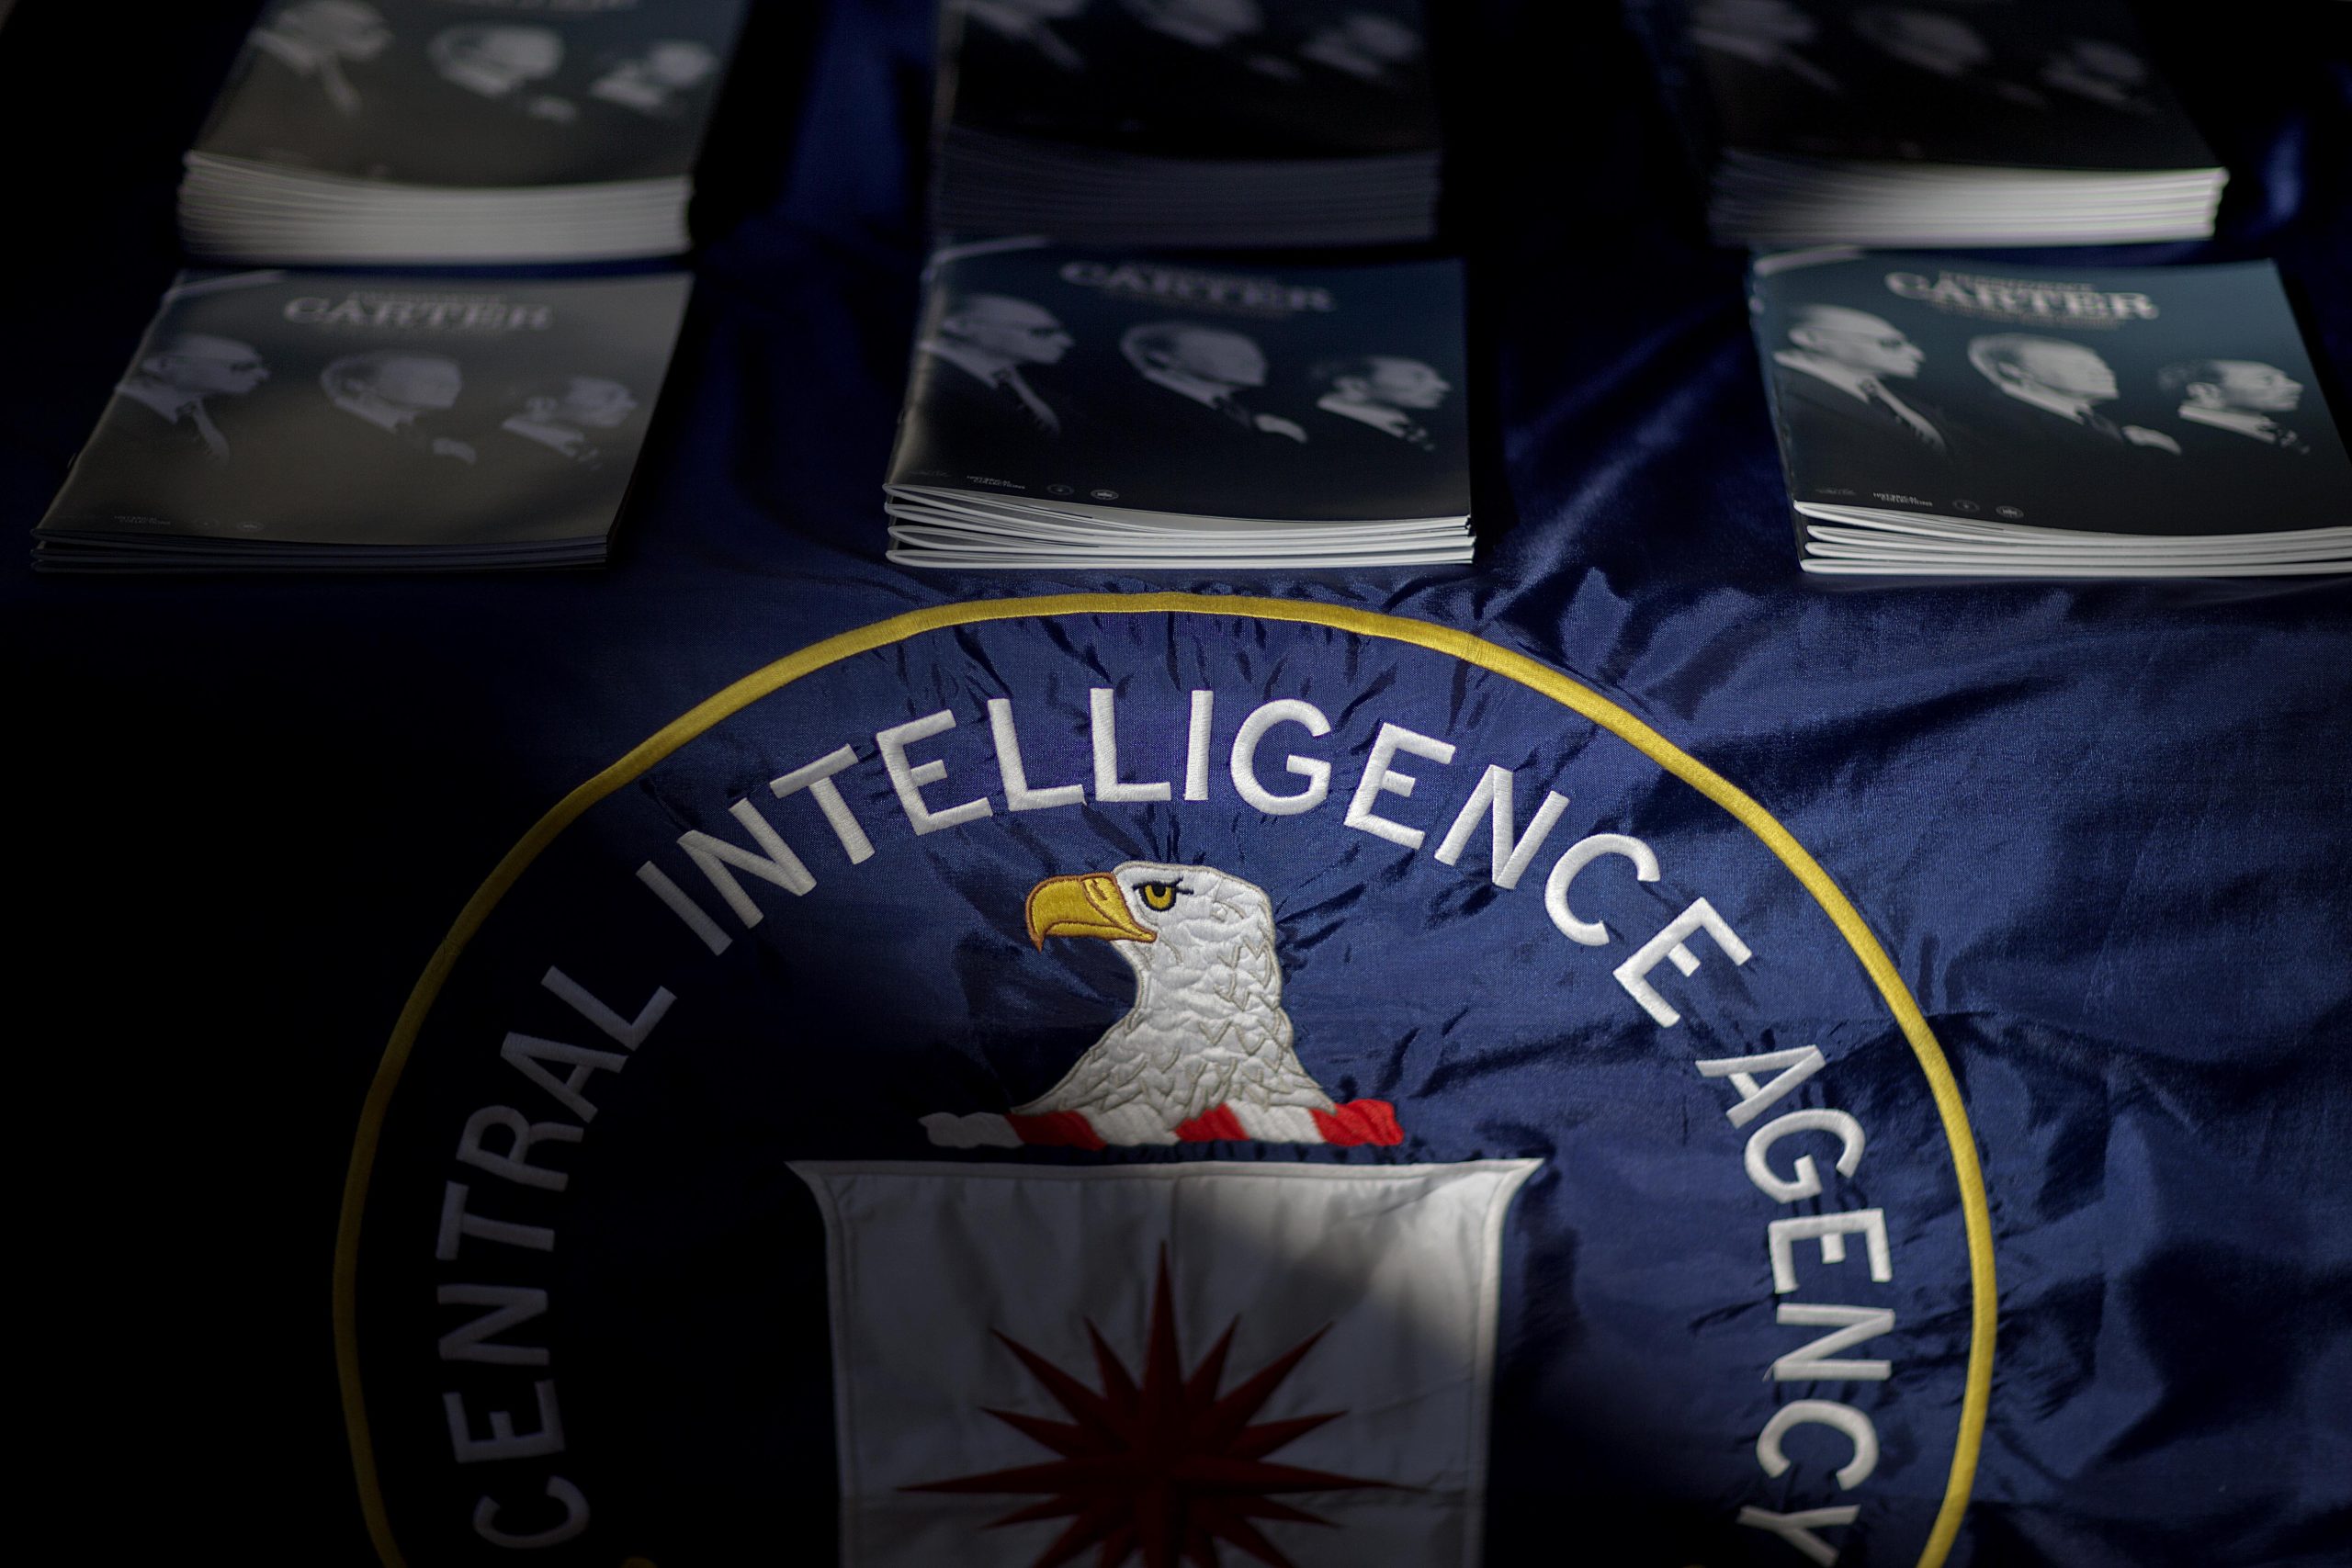 ΗΠΑ: Για συγκάλυψη της υπόθεσης βασανισμών της CIA κάνουν λόγο Δημοκρατικοί γερουσιαστές από τους Ρεπουμπλικανούς